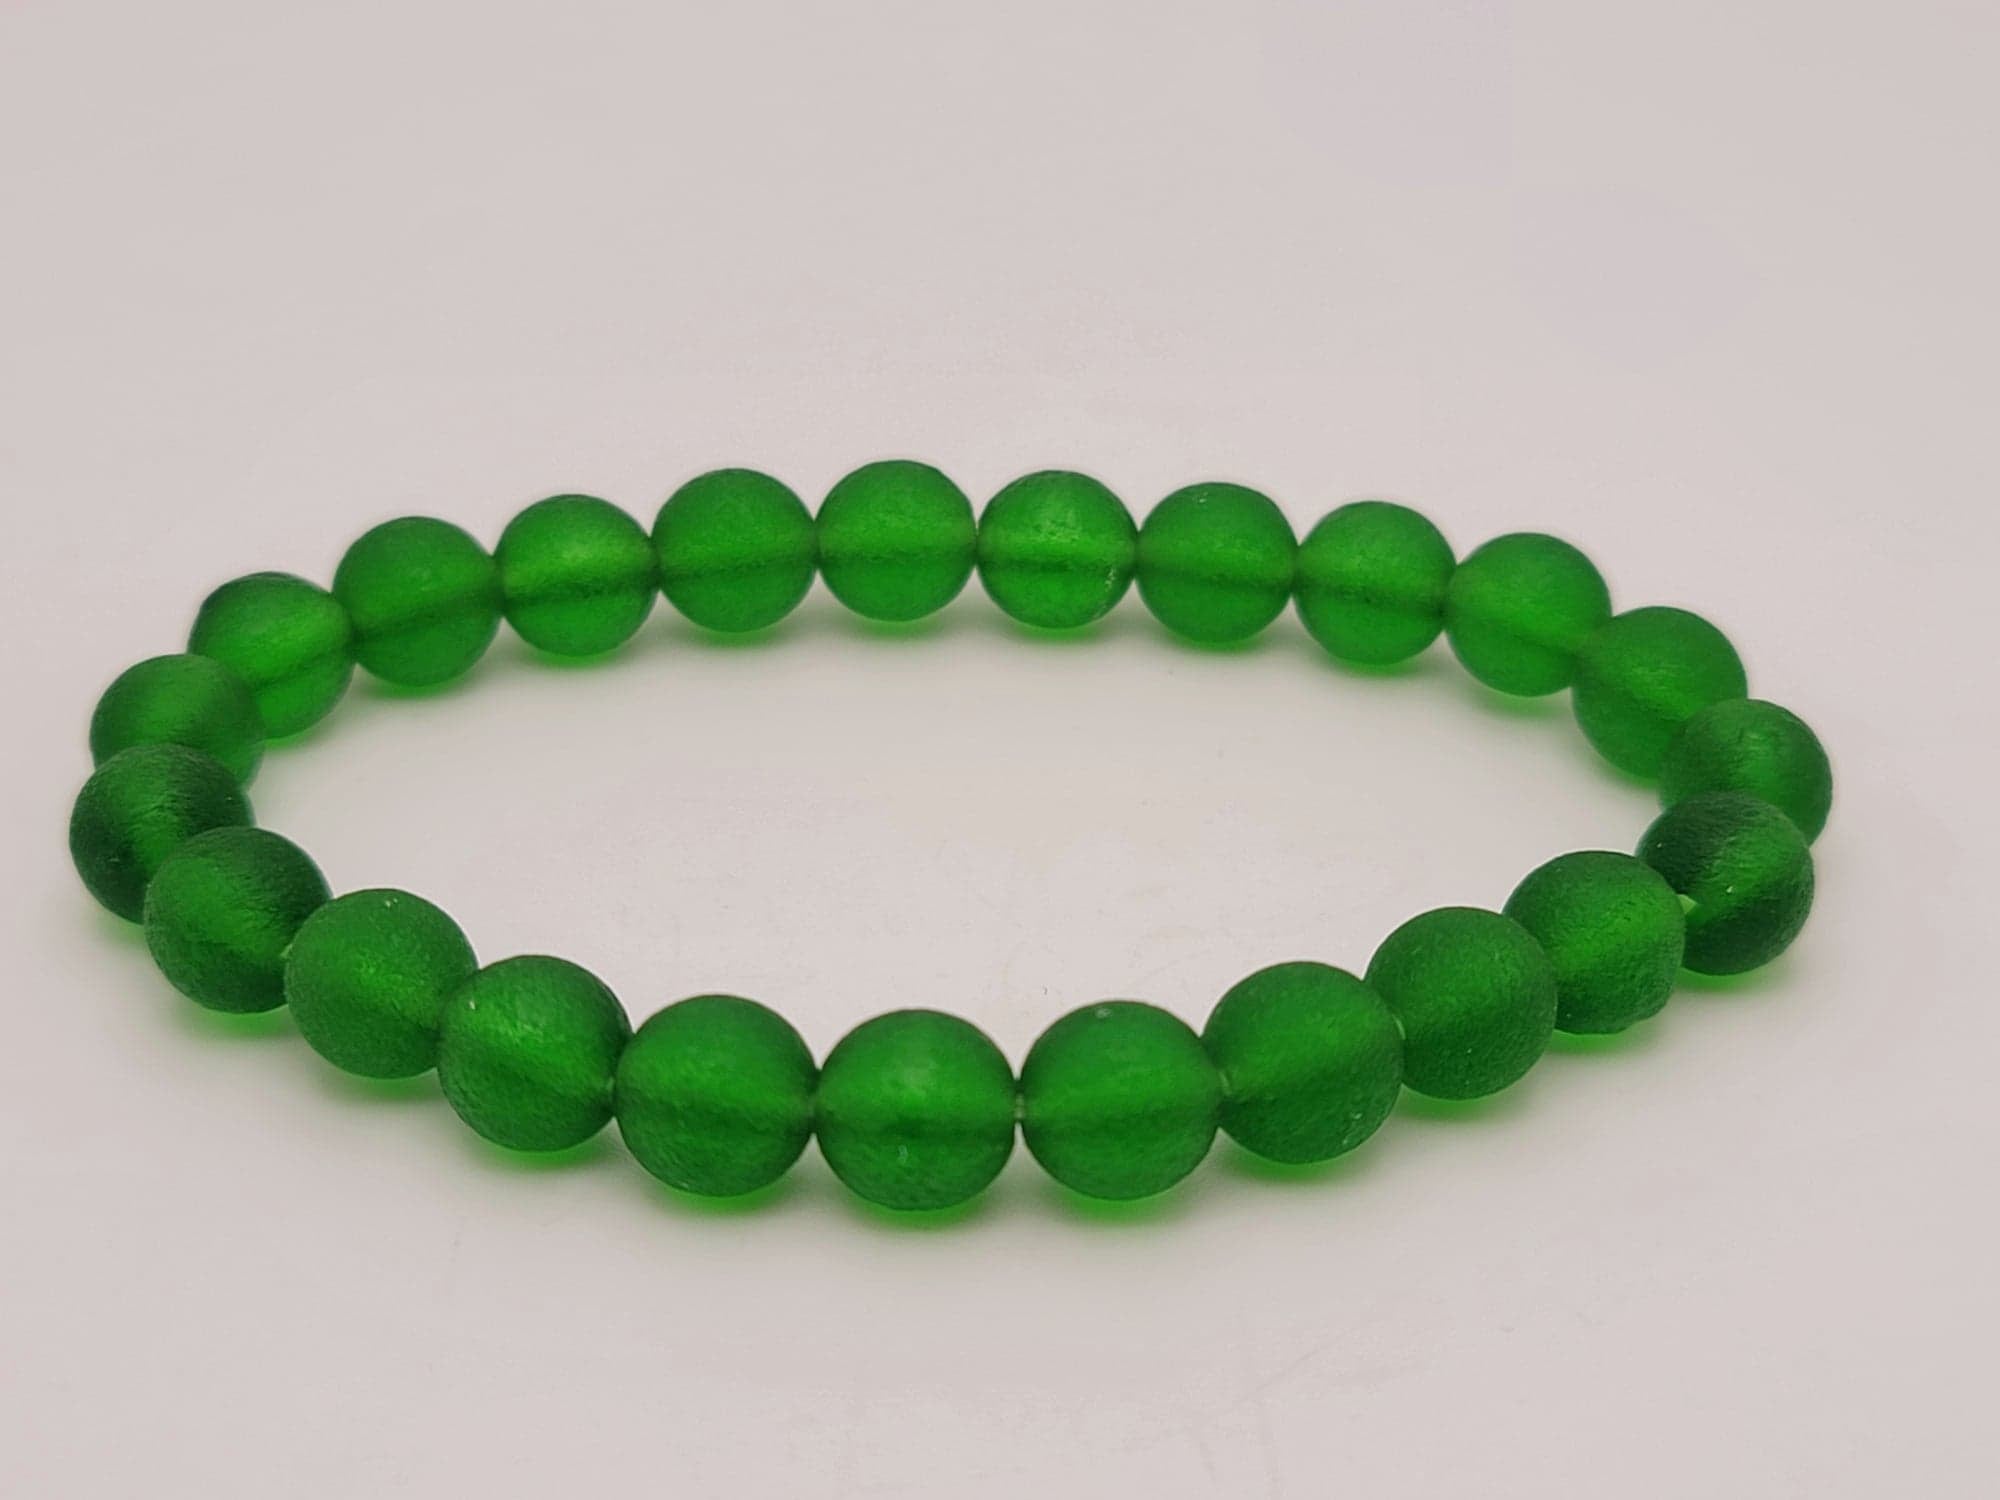 12mm Green GEM MOLDAVITE Meteorite Impact Glass Bead Bracelet | eBay